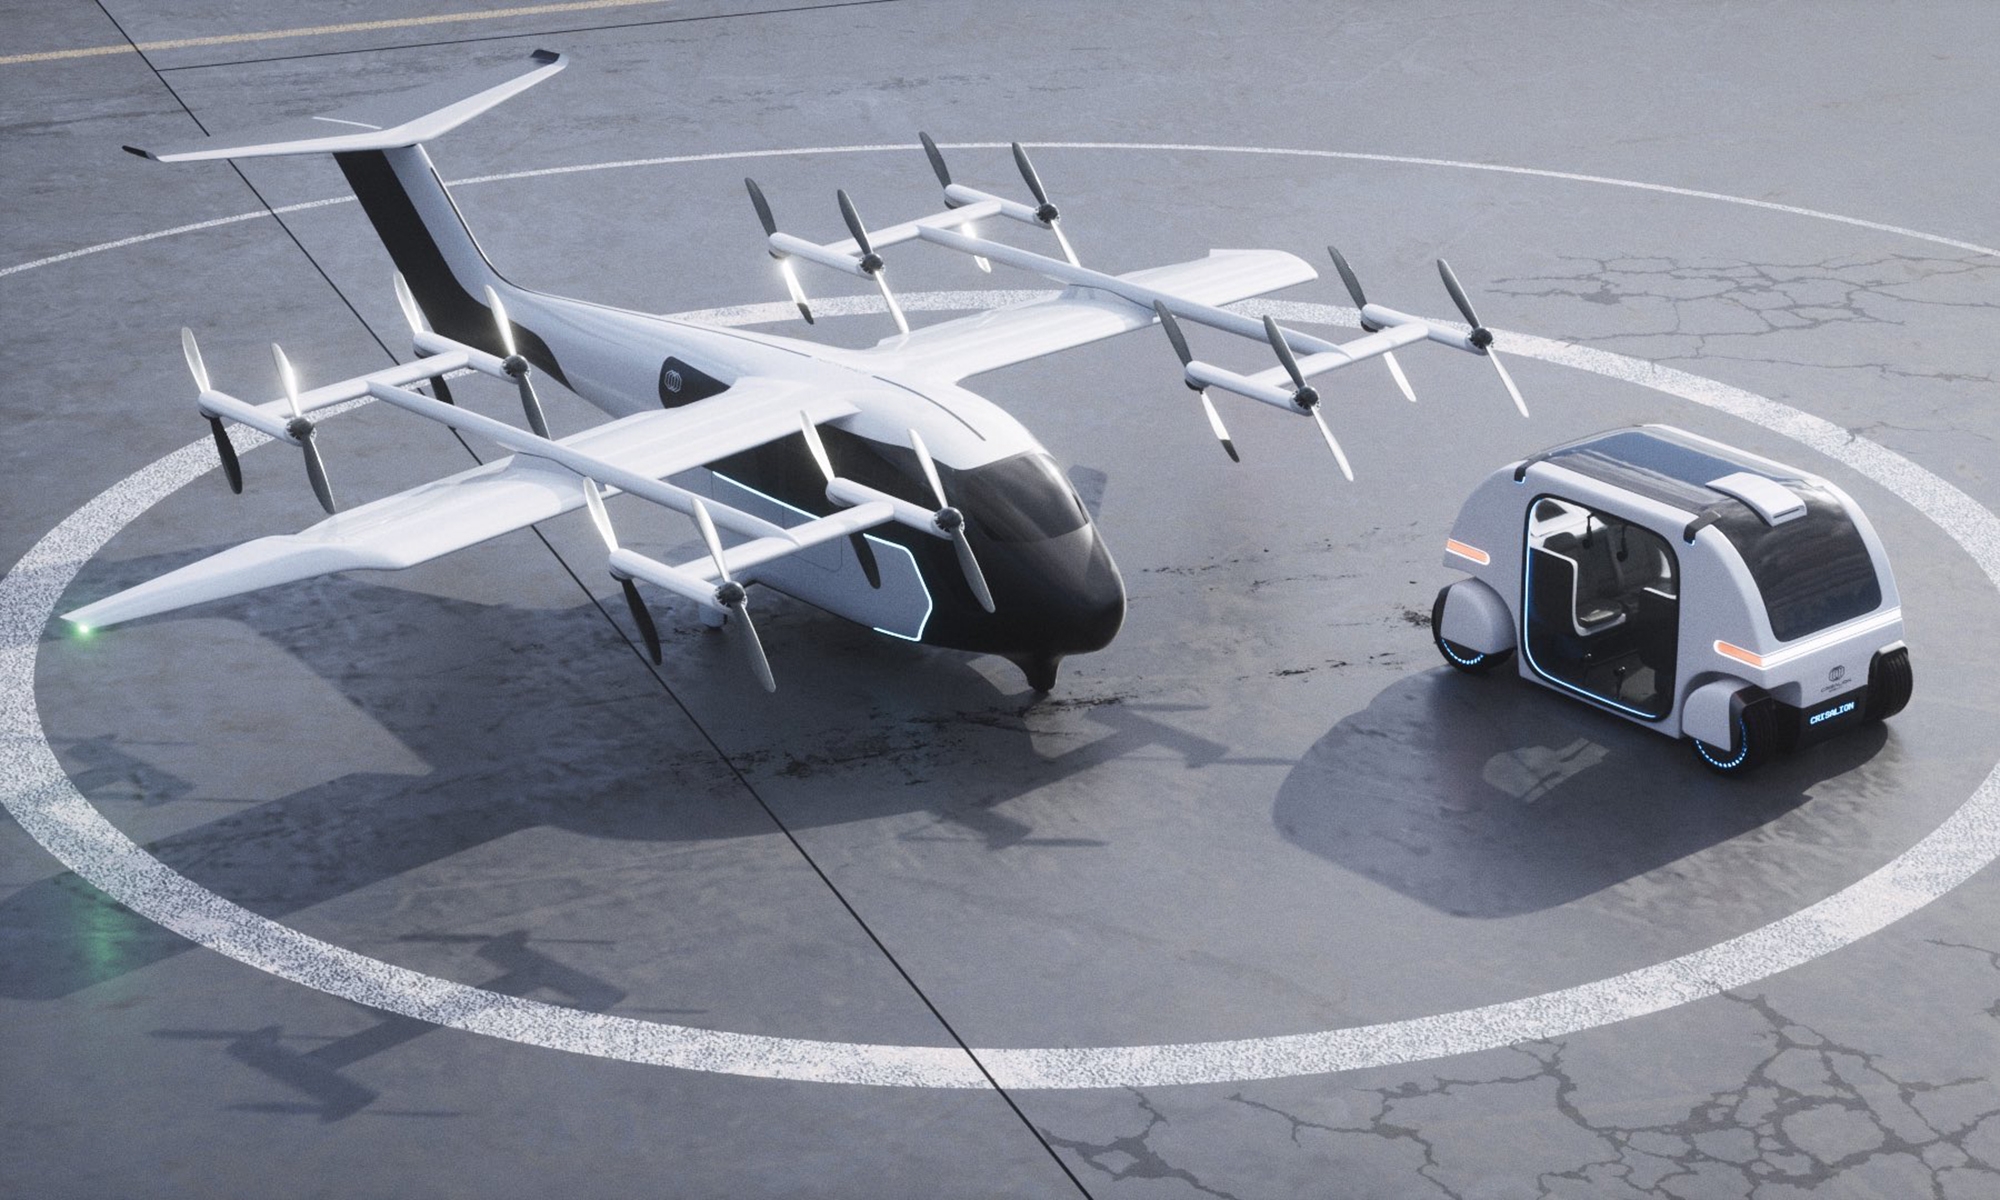 Crisalion Mobility se ha asociado con Kookiejar para implementar esta movilidad aérea avanzada.